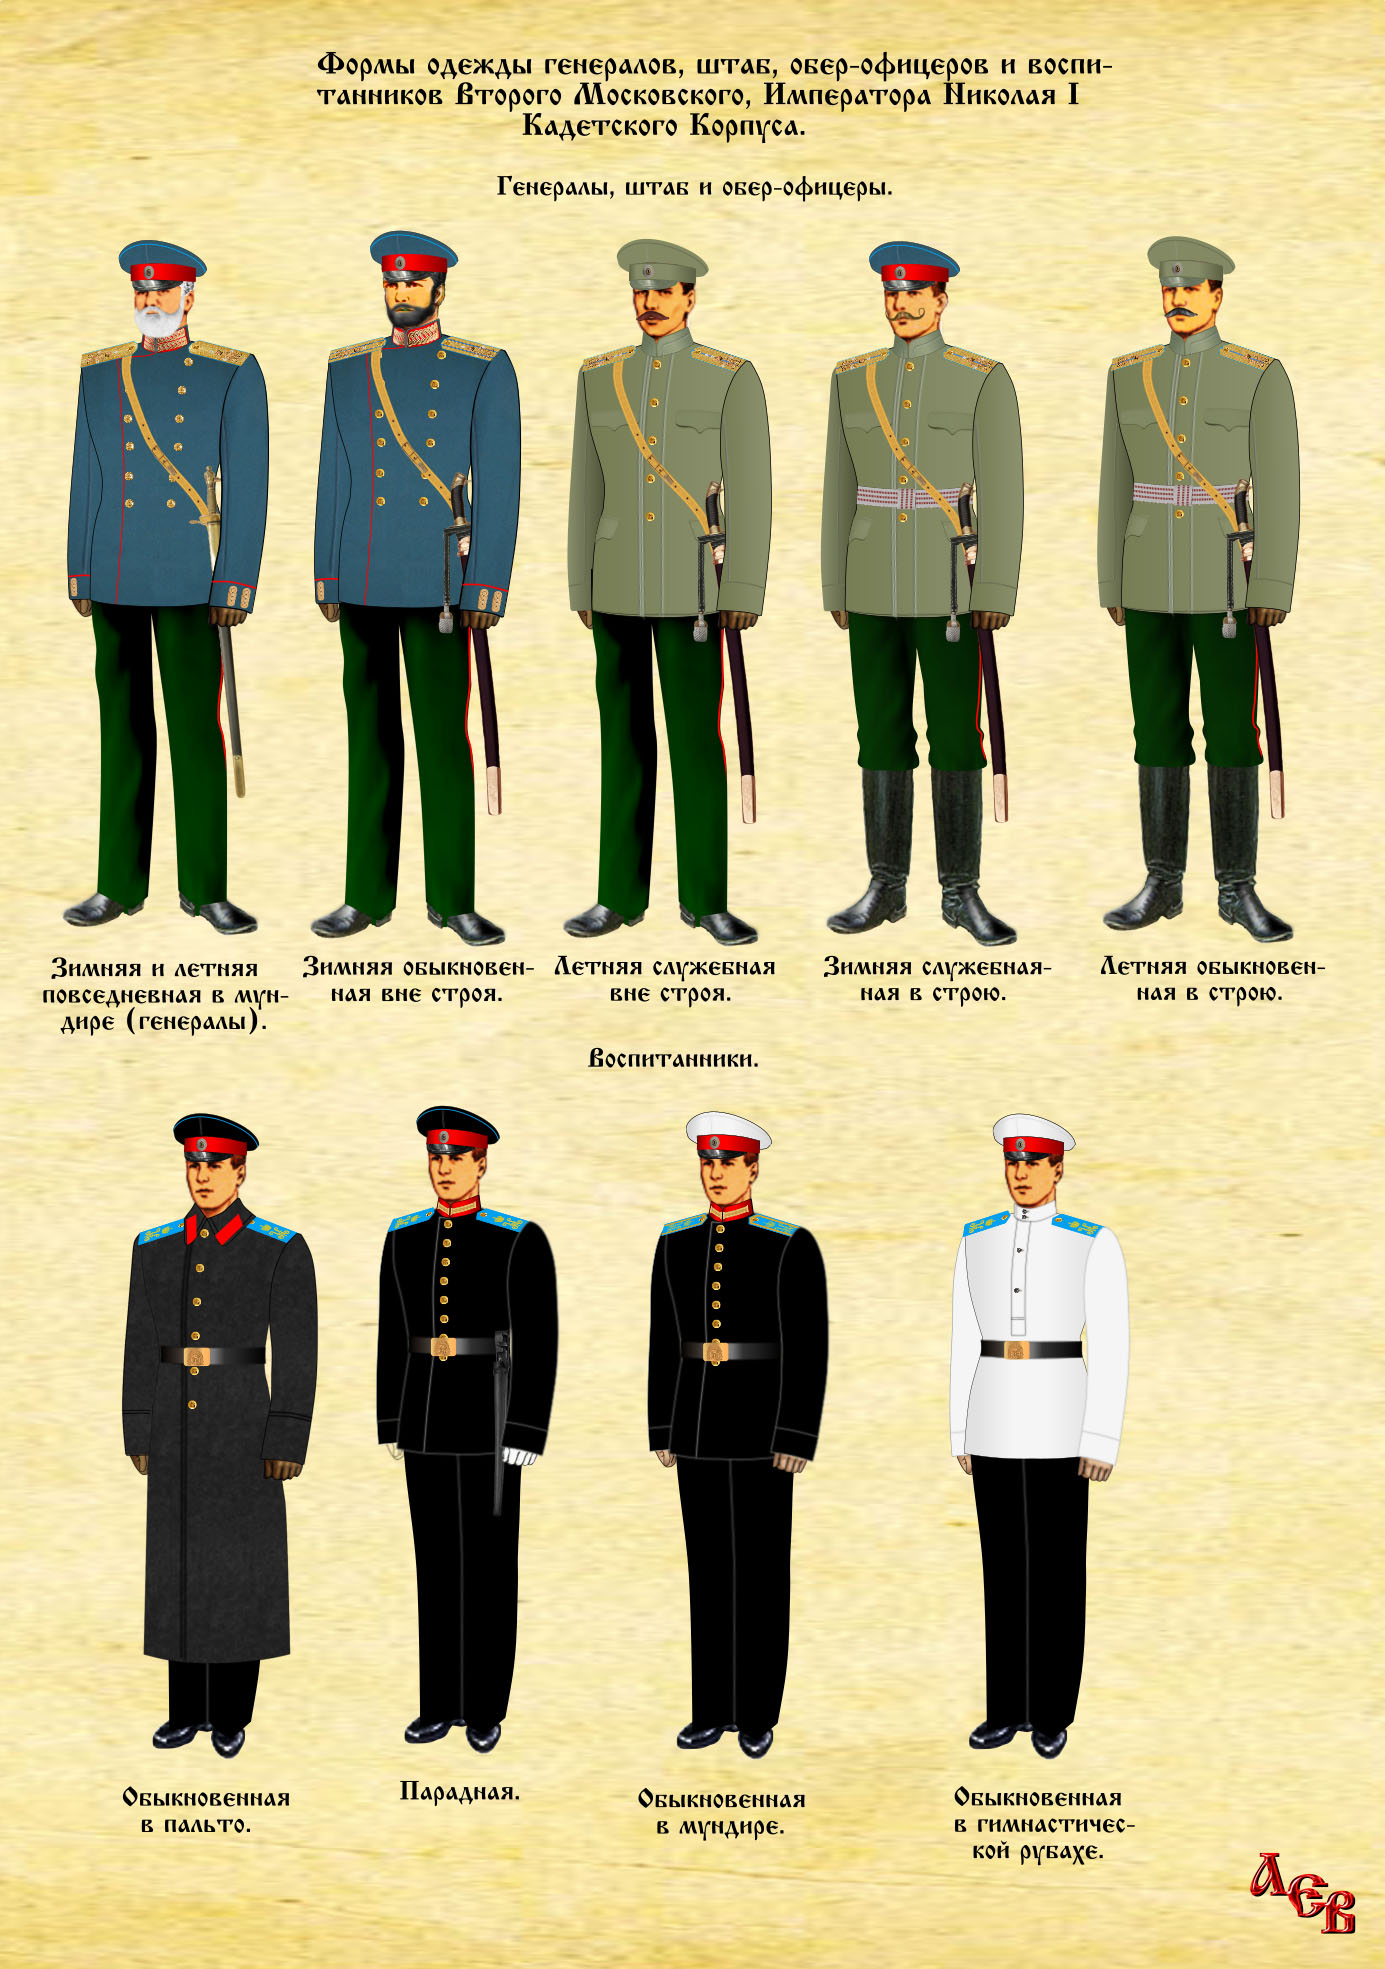 2-й Московский Кадетский корпус Форма